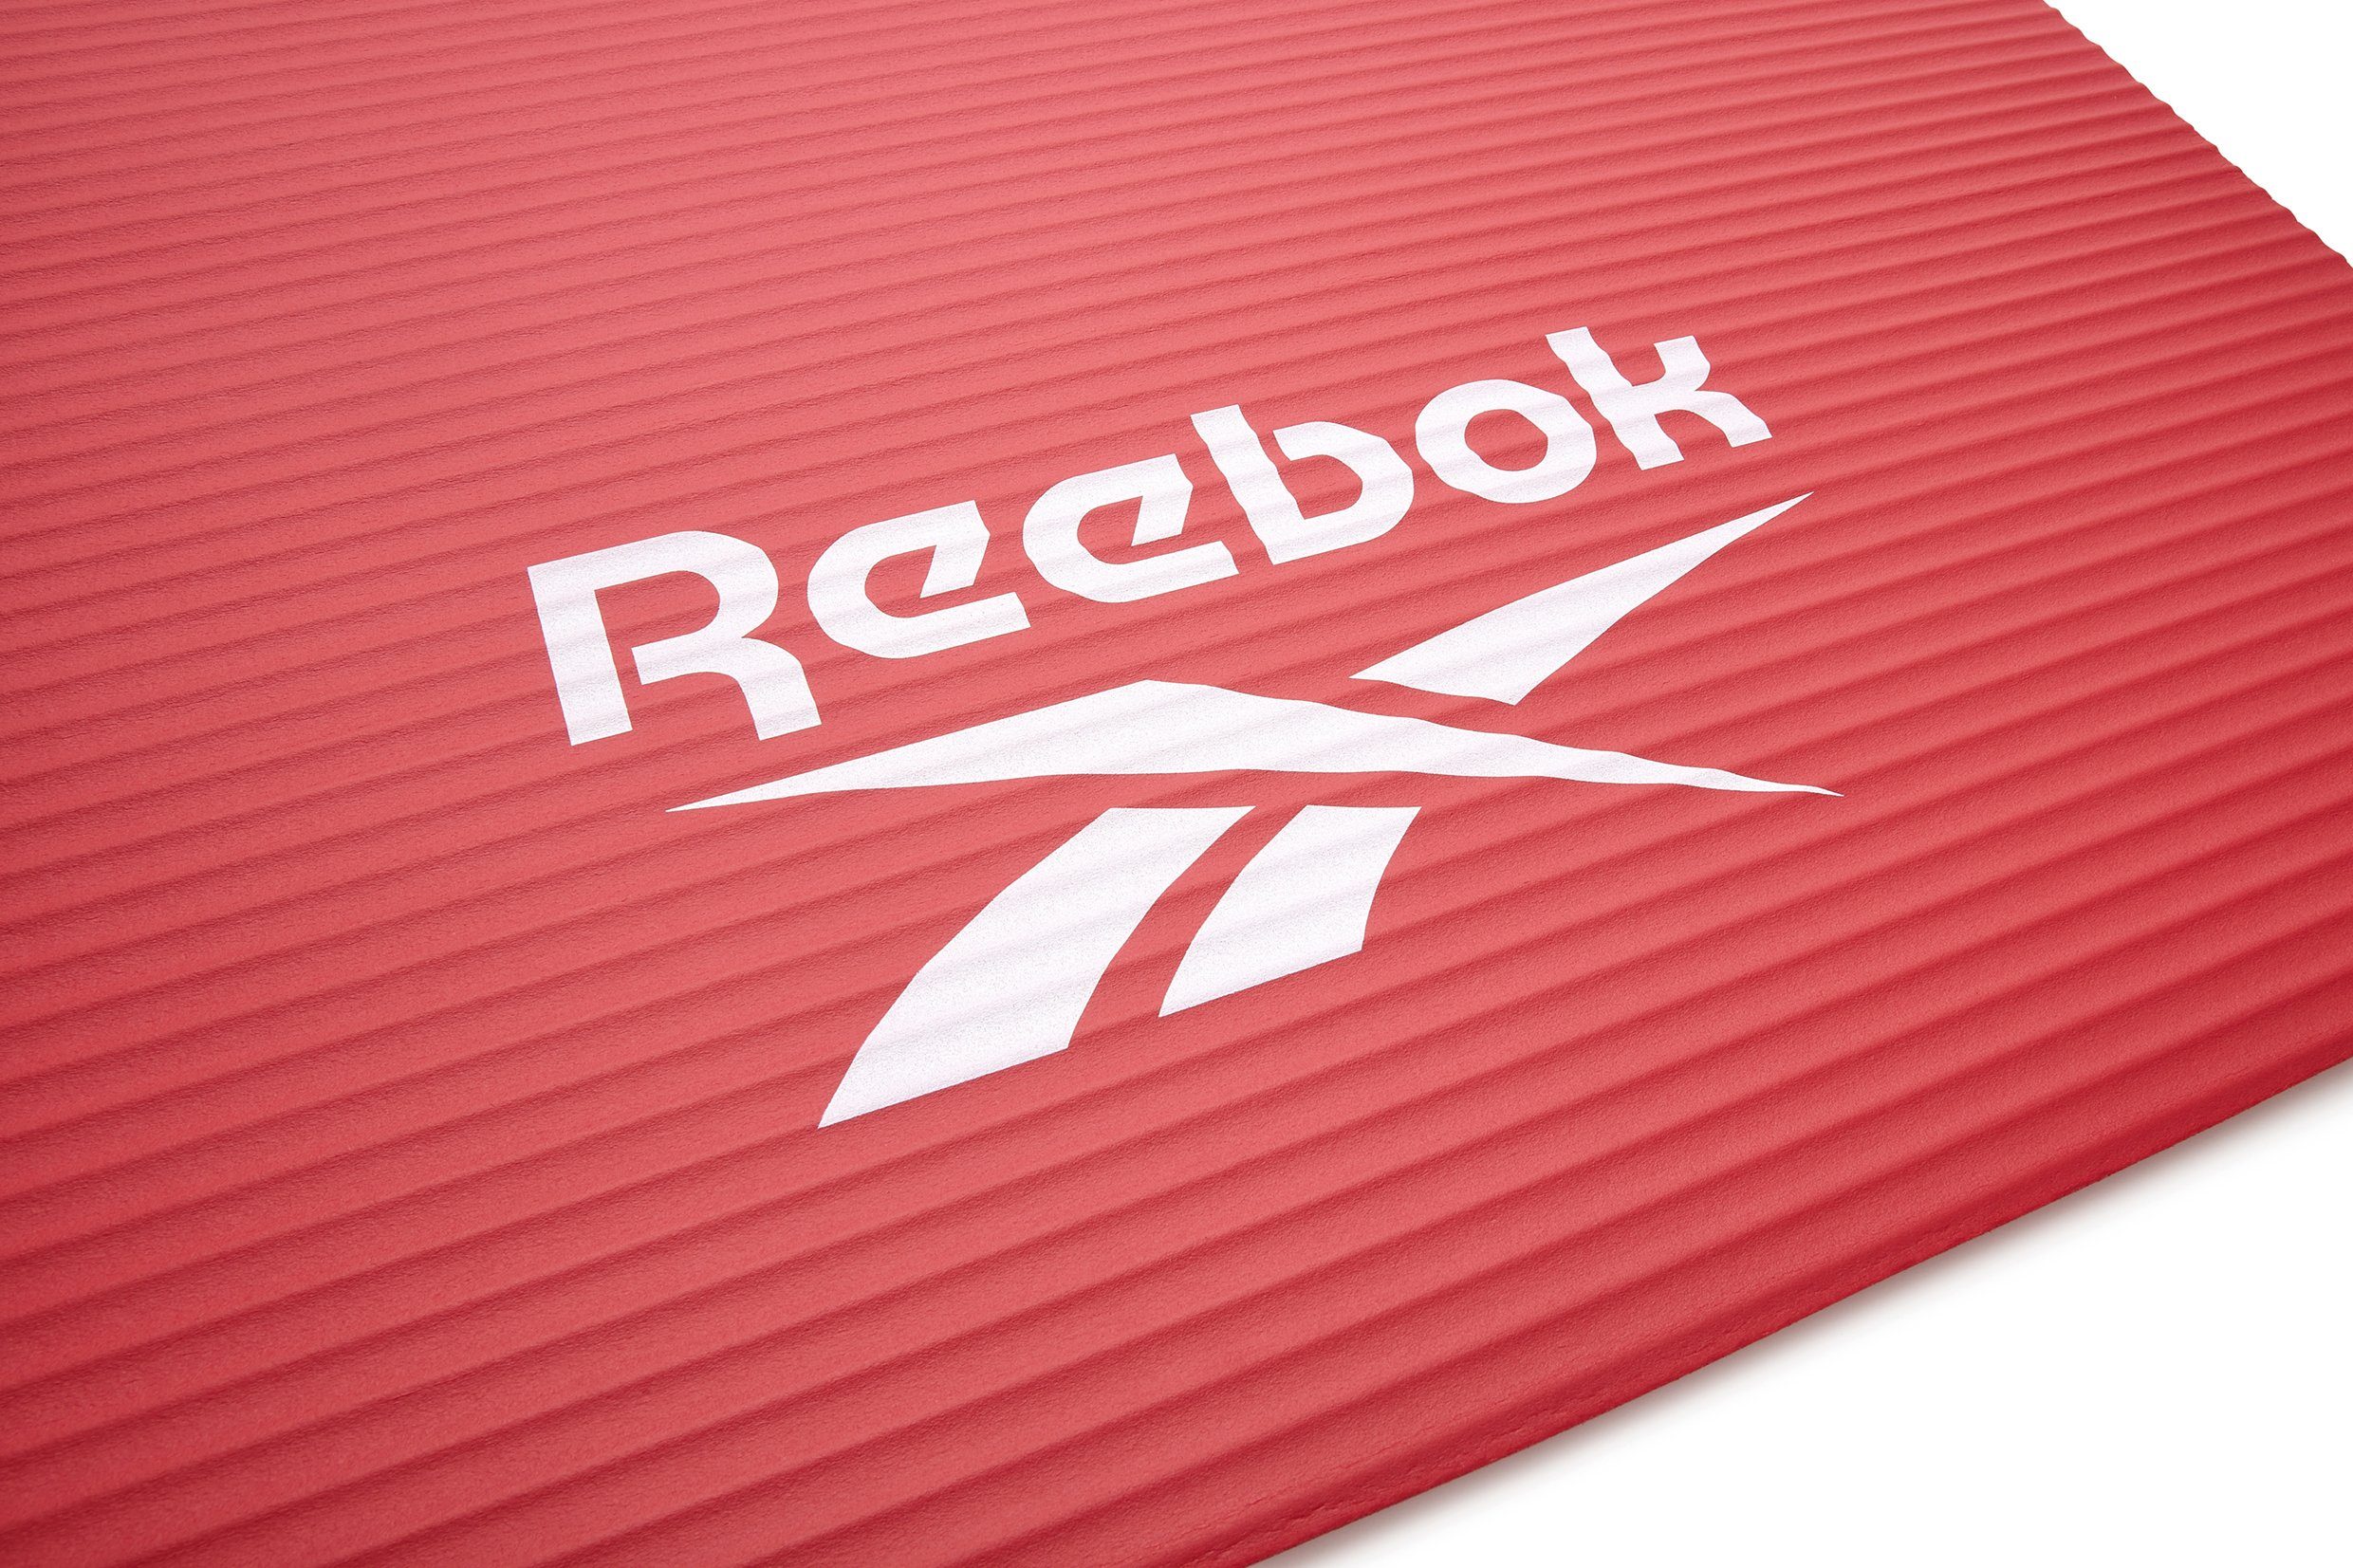 Fitness-/Trainingsmatte, Reebok 15mm, Reebok rot Rutschfeste Fitnessmatte Oberfläche